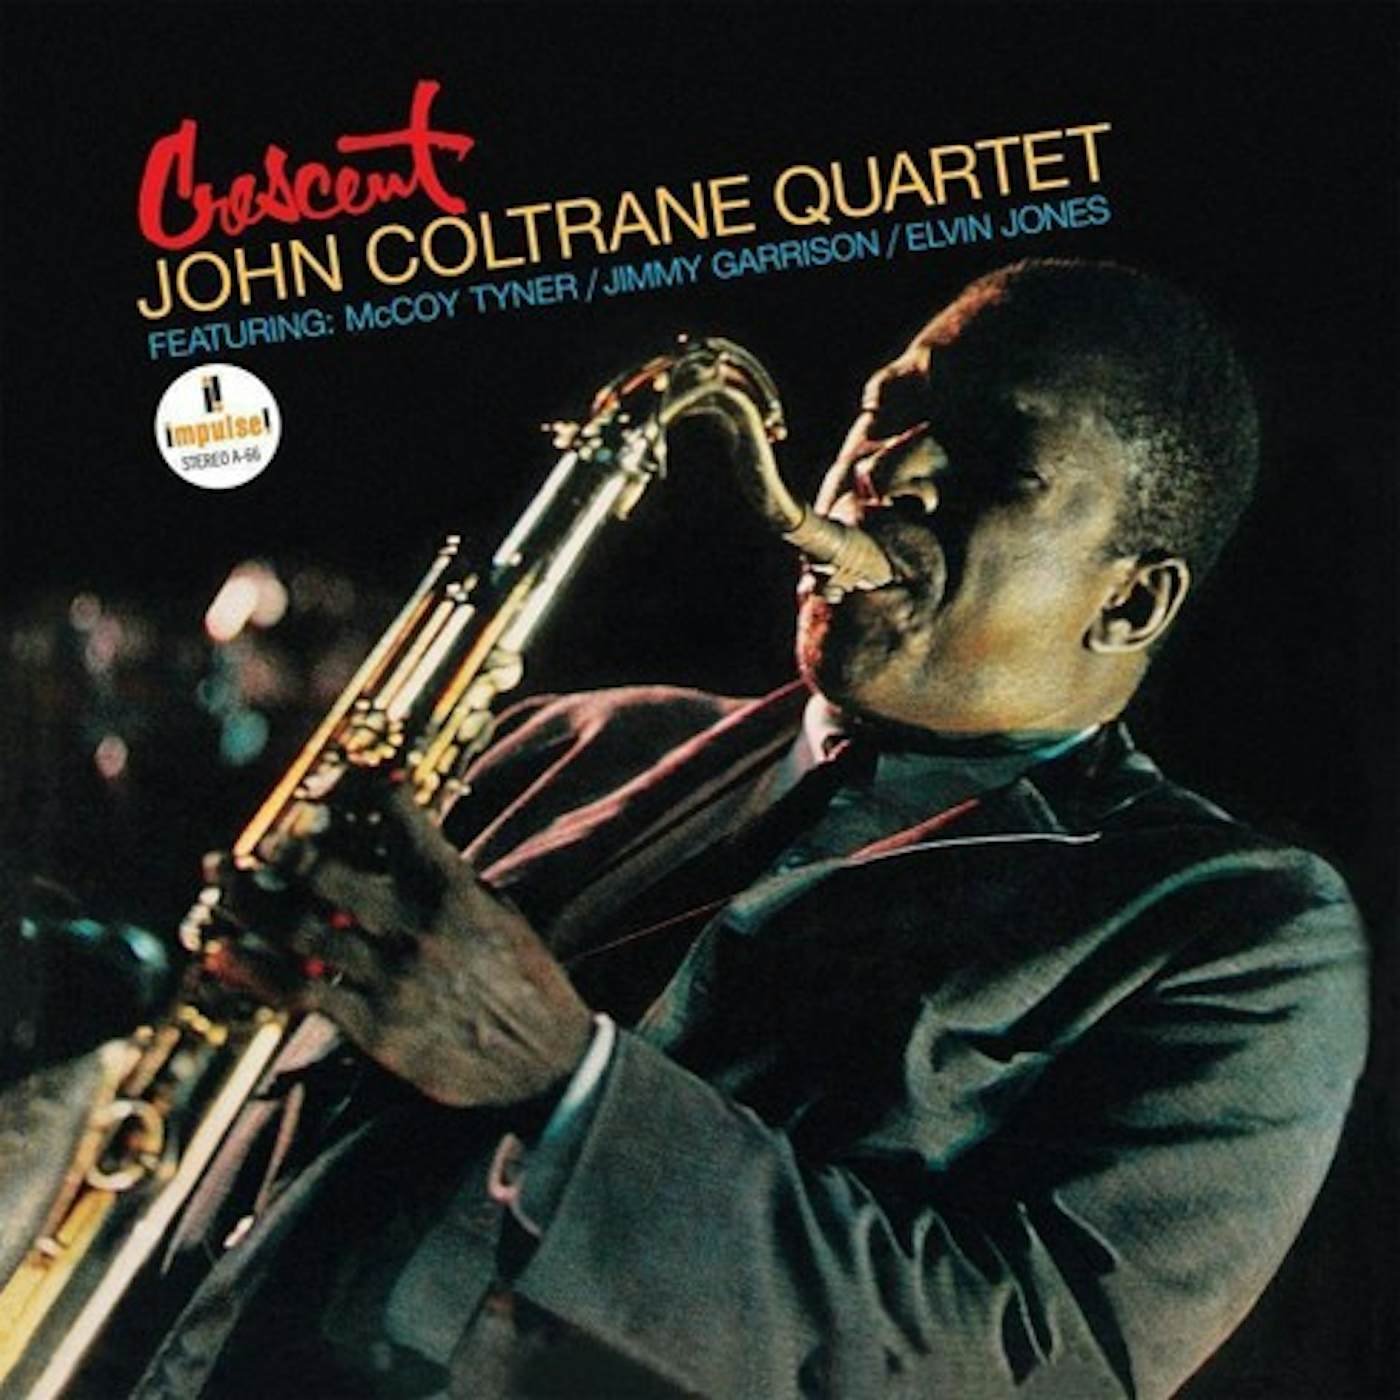 John Coltrane Quartet Crescent (Verve Acoustic Sounds Series) Vinyl Record